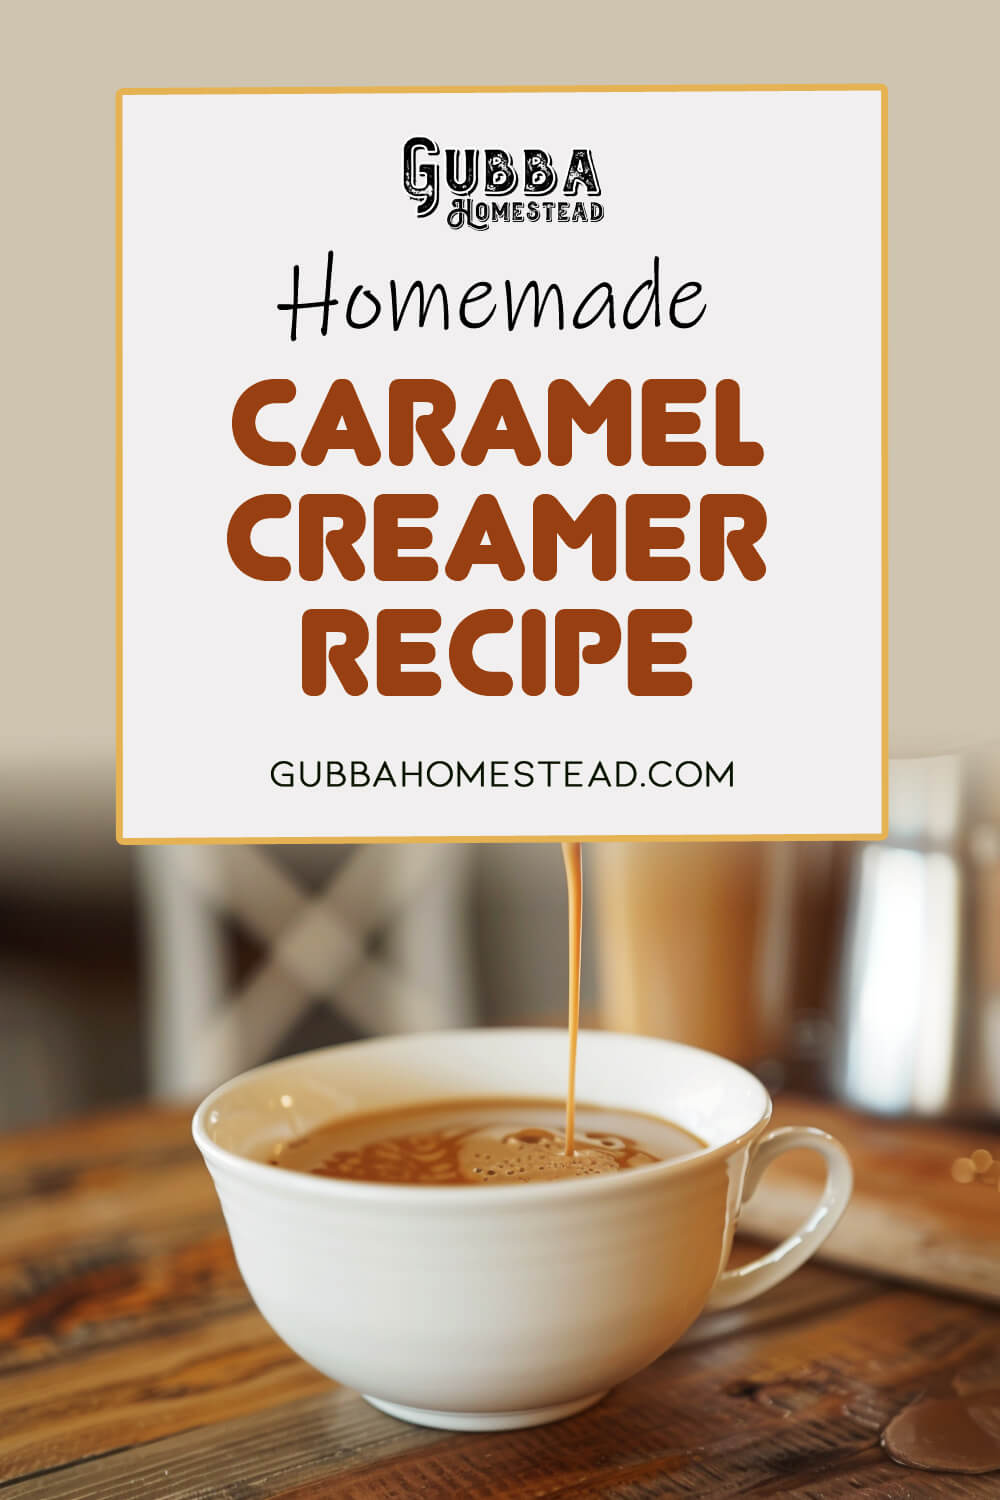 Homemade Caramel Creamer Recipe